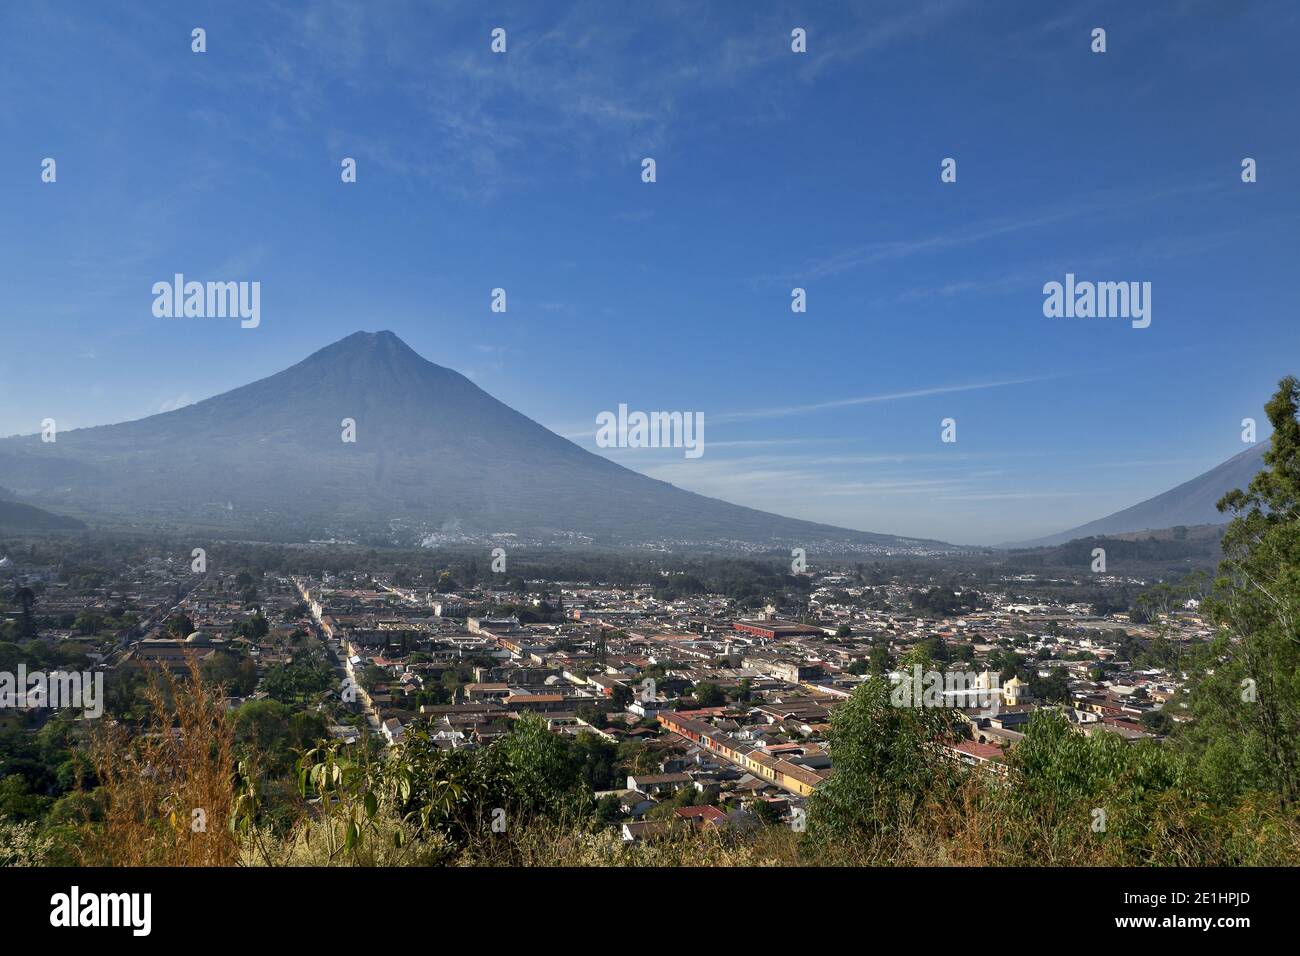 Antigua and volcano Agua, Guatemala, Central America. View from Cerro de la Cruz Stock Photo